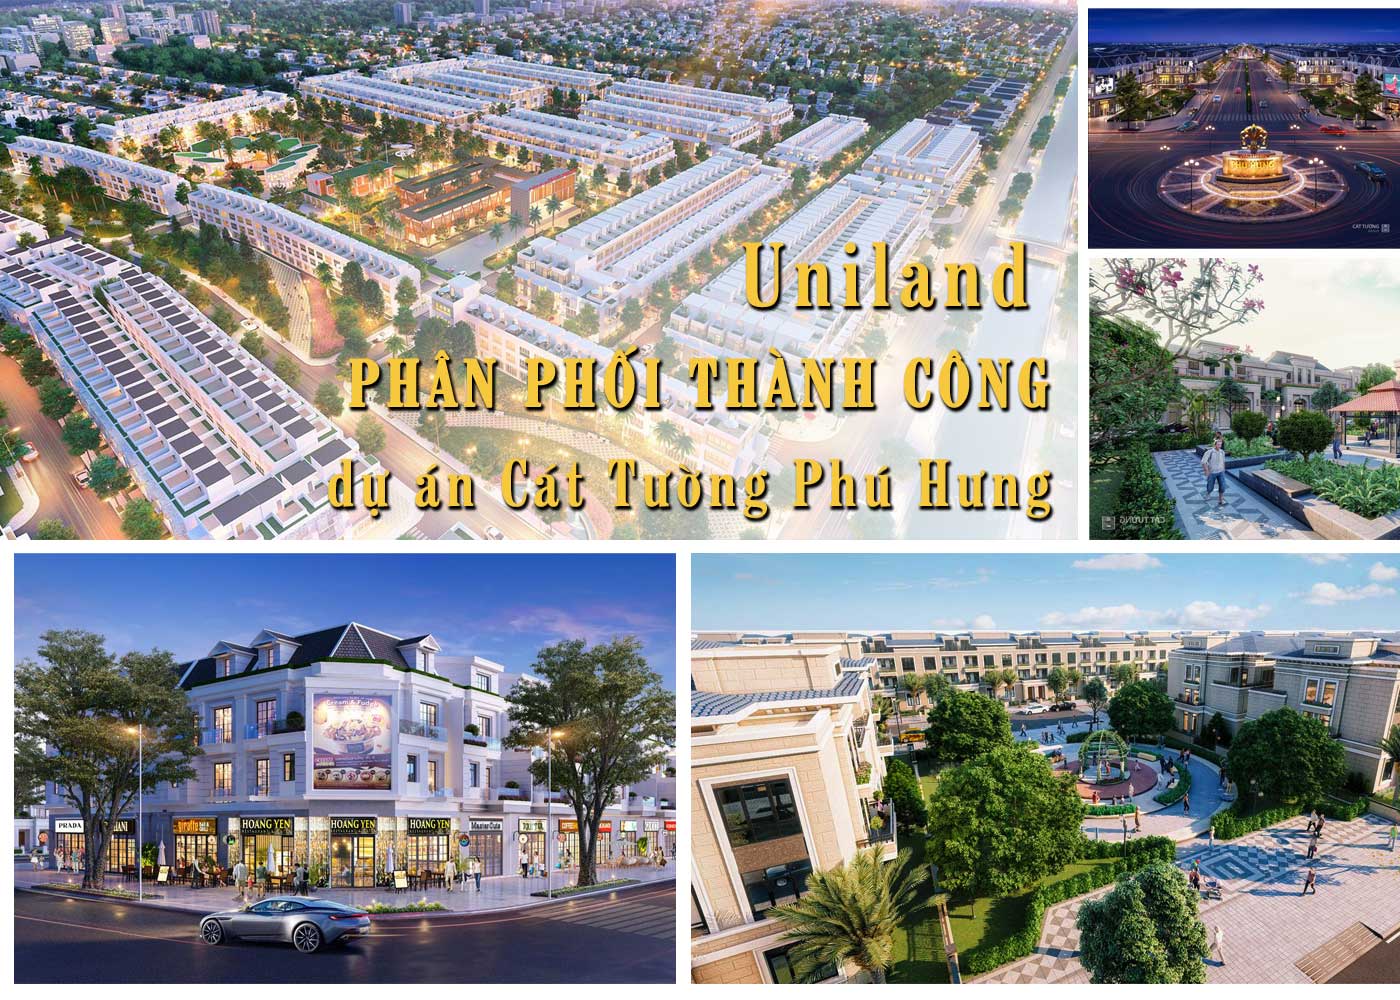 Uniland phân phối thành công dự án Cát Tường Phú Hưng - Ảnh 1